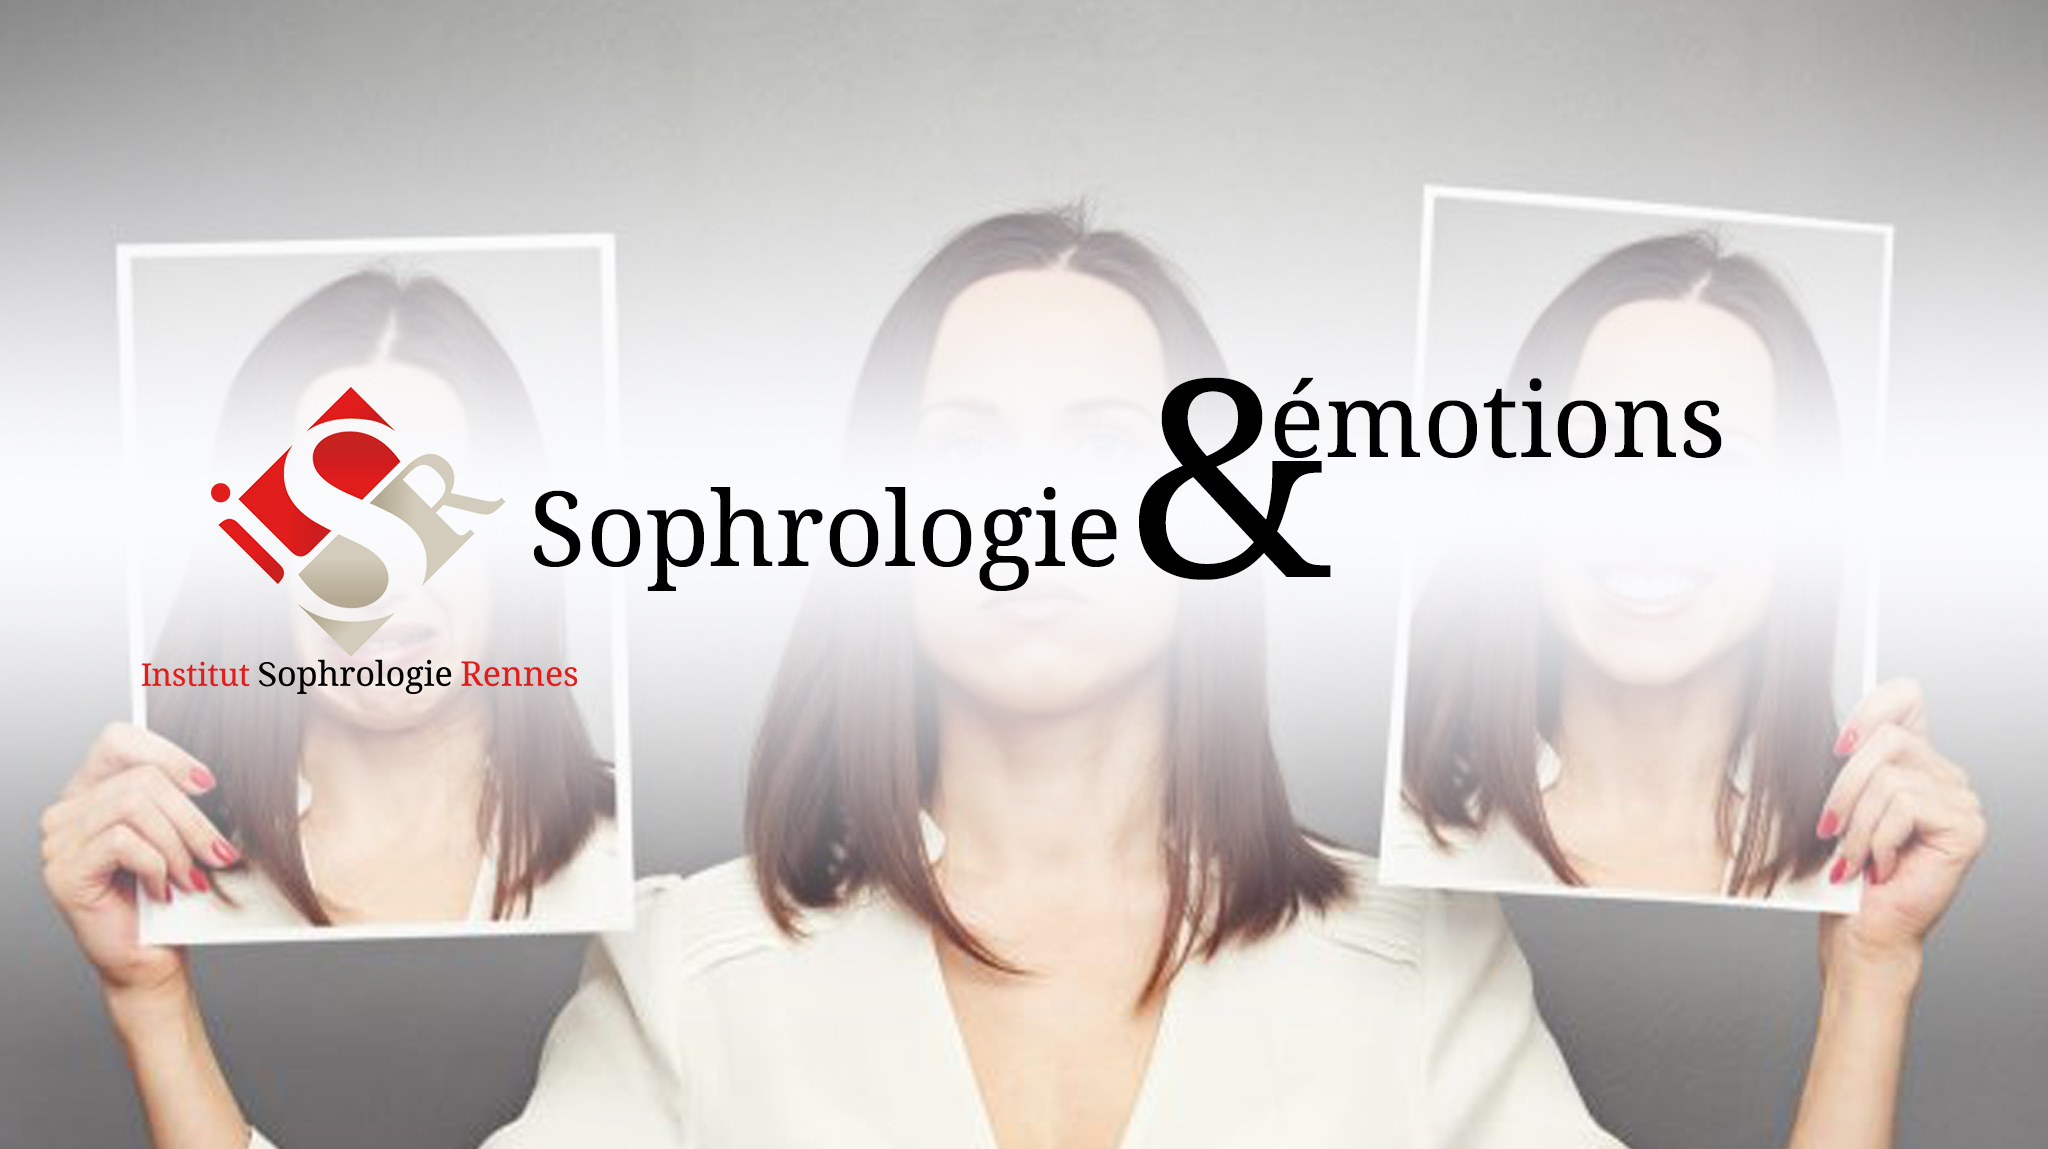 Sophrologie et émotions - ISR